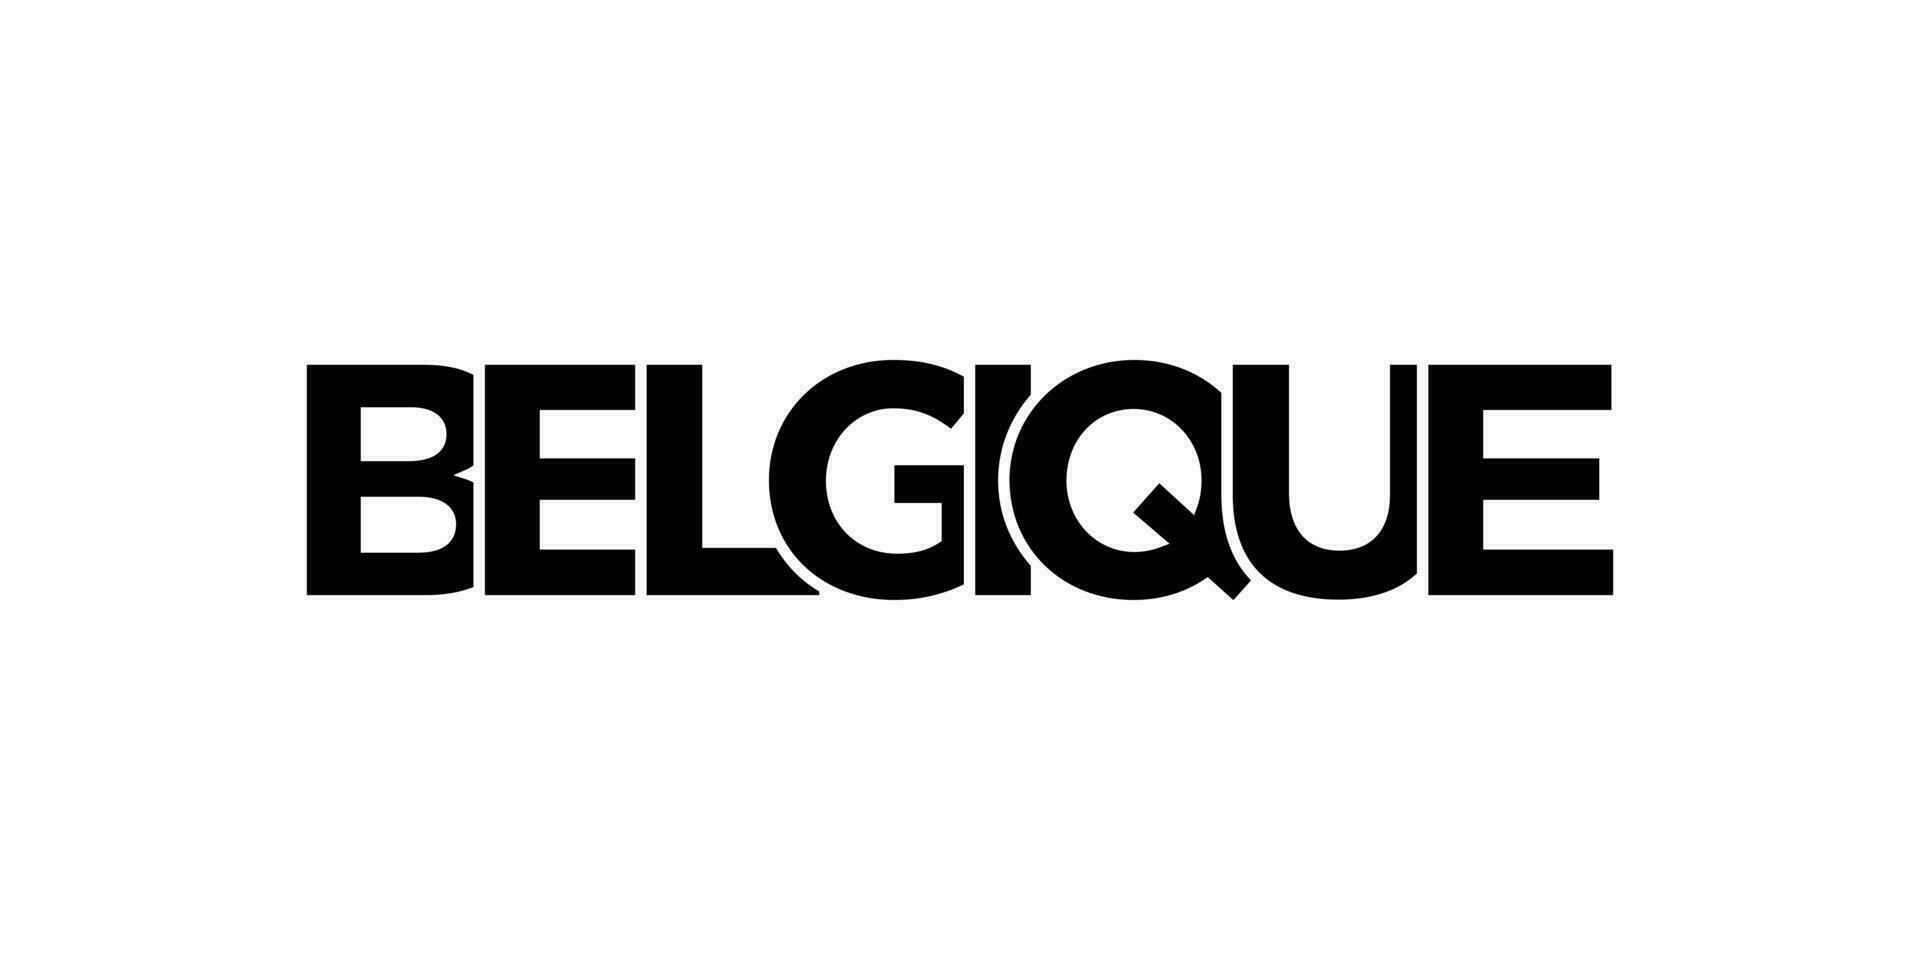 Belgien Emblem. das Design Eigenschaften ein geometrisch Stil, Vektor Illustration mit Fett gedruckt Typografie im ein modern Schriftart. das Grafik Slogan Beschriftung.